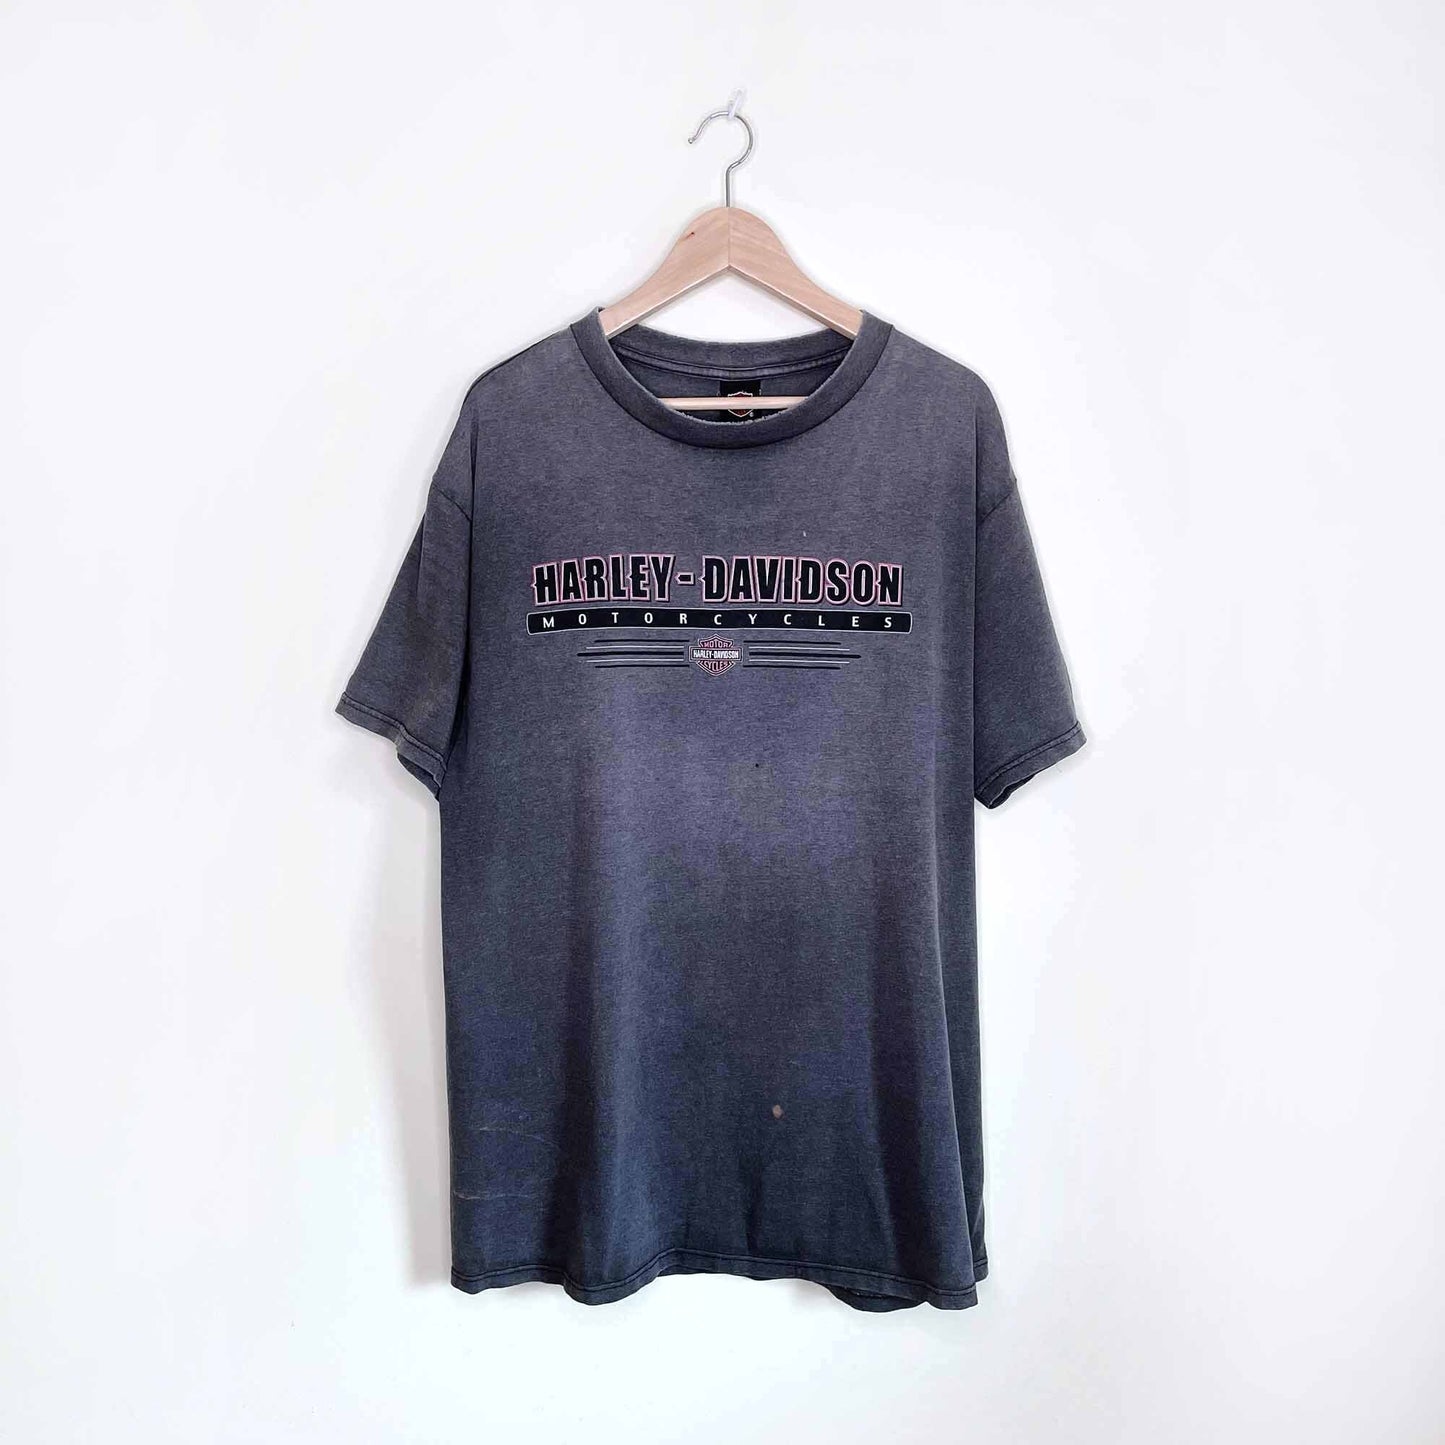 vintage harley davidson rocky's london t-shirt - size large